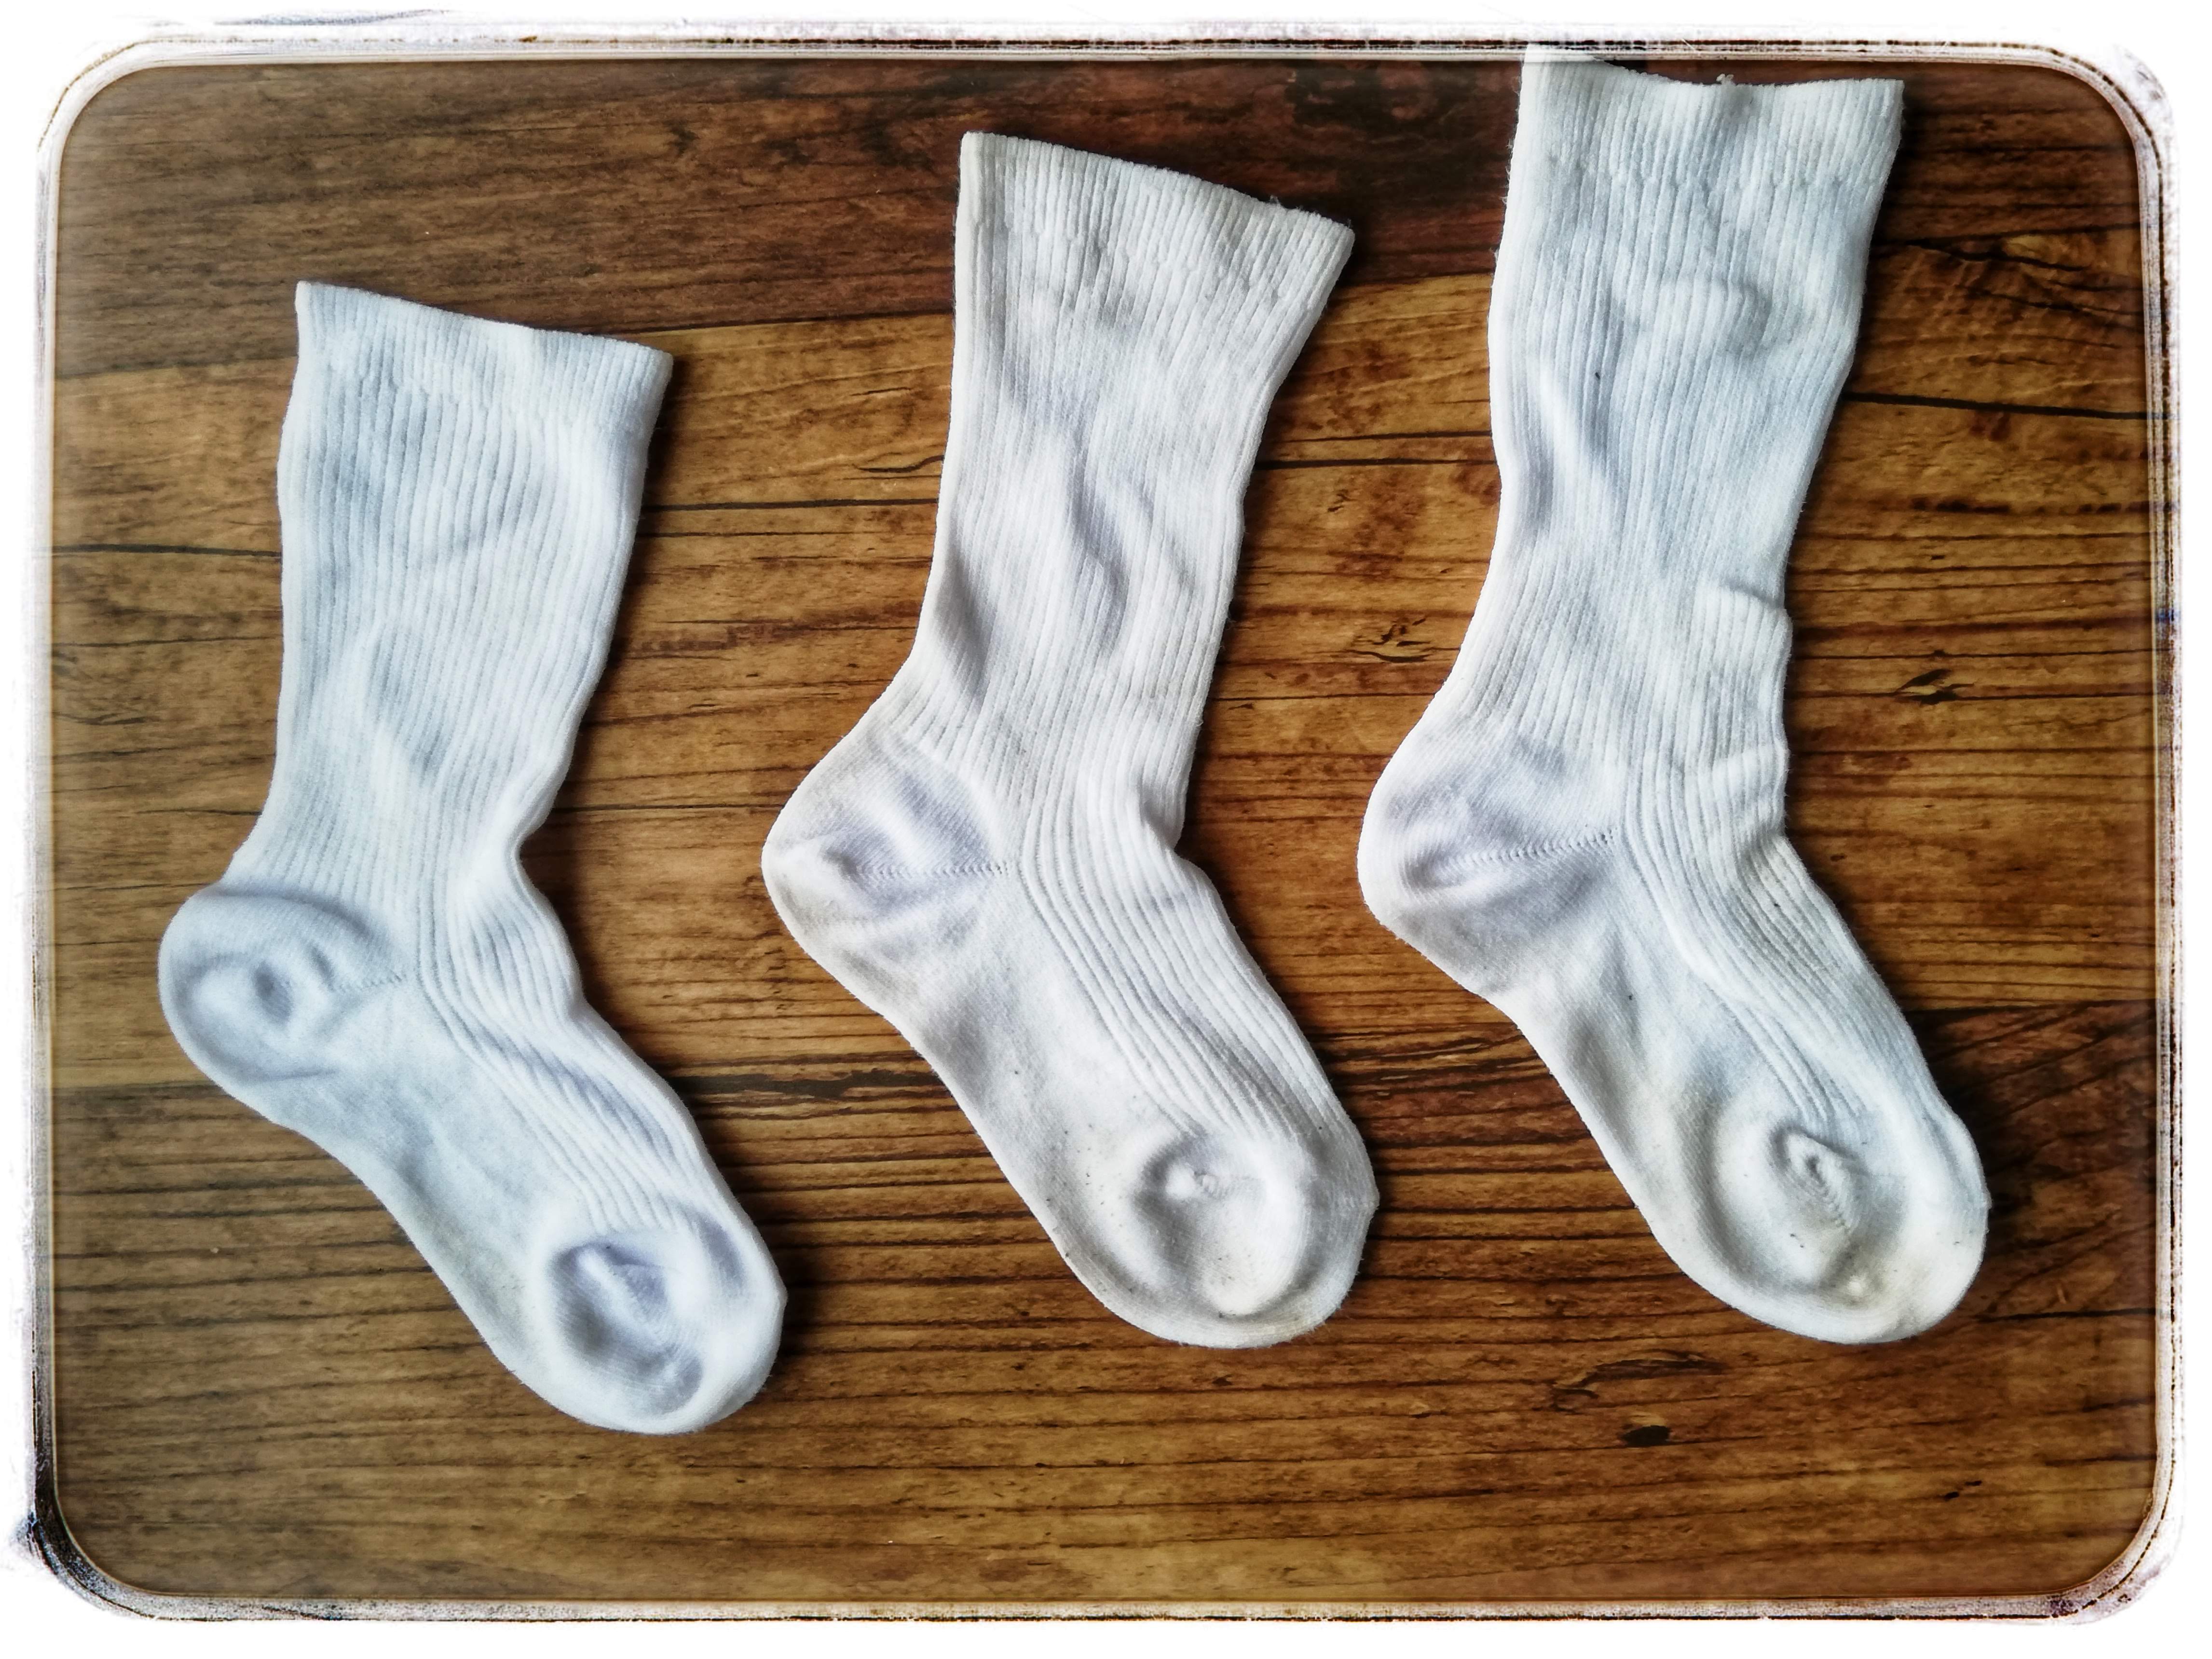 靴下の汚れを落とす方法 早めの処理で白さを持続させる方法とは にこにこなくらし